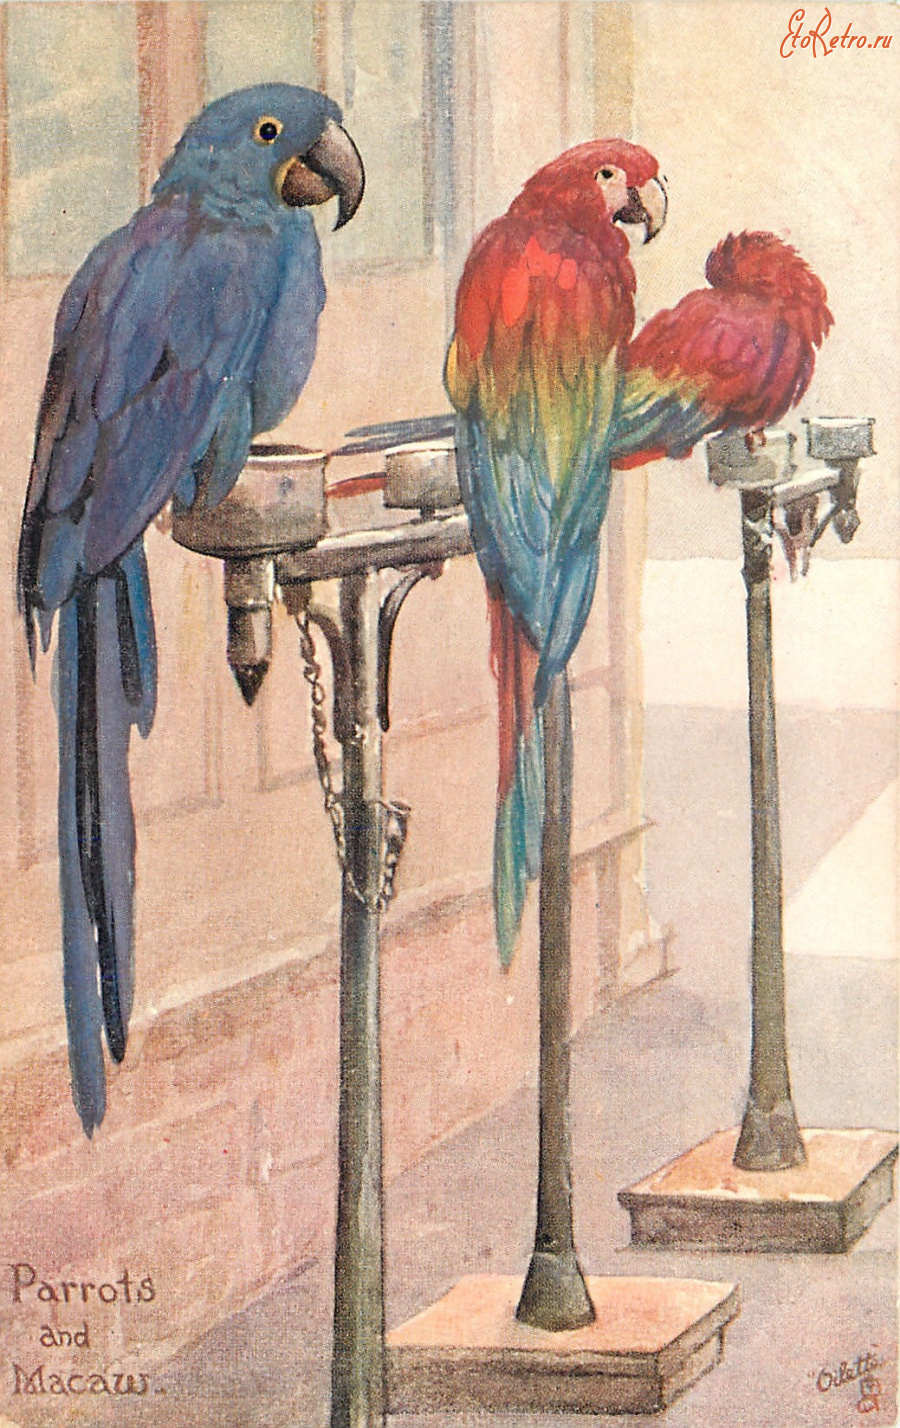 Ретро открытки - Попугаи, Парро и Макау